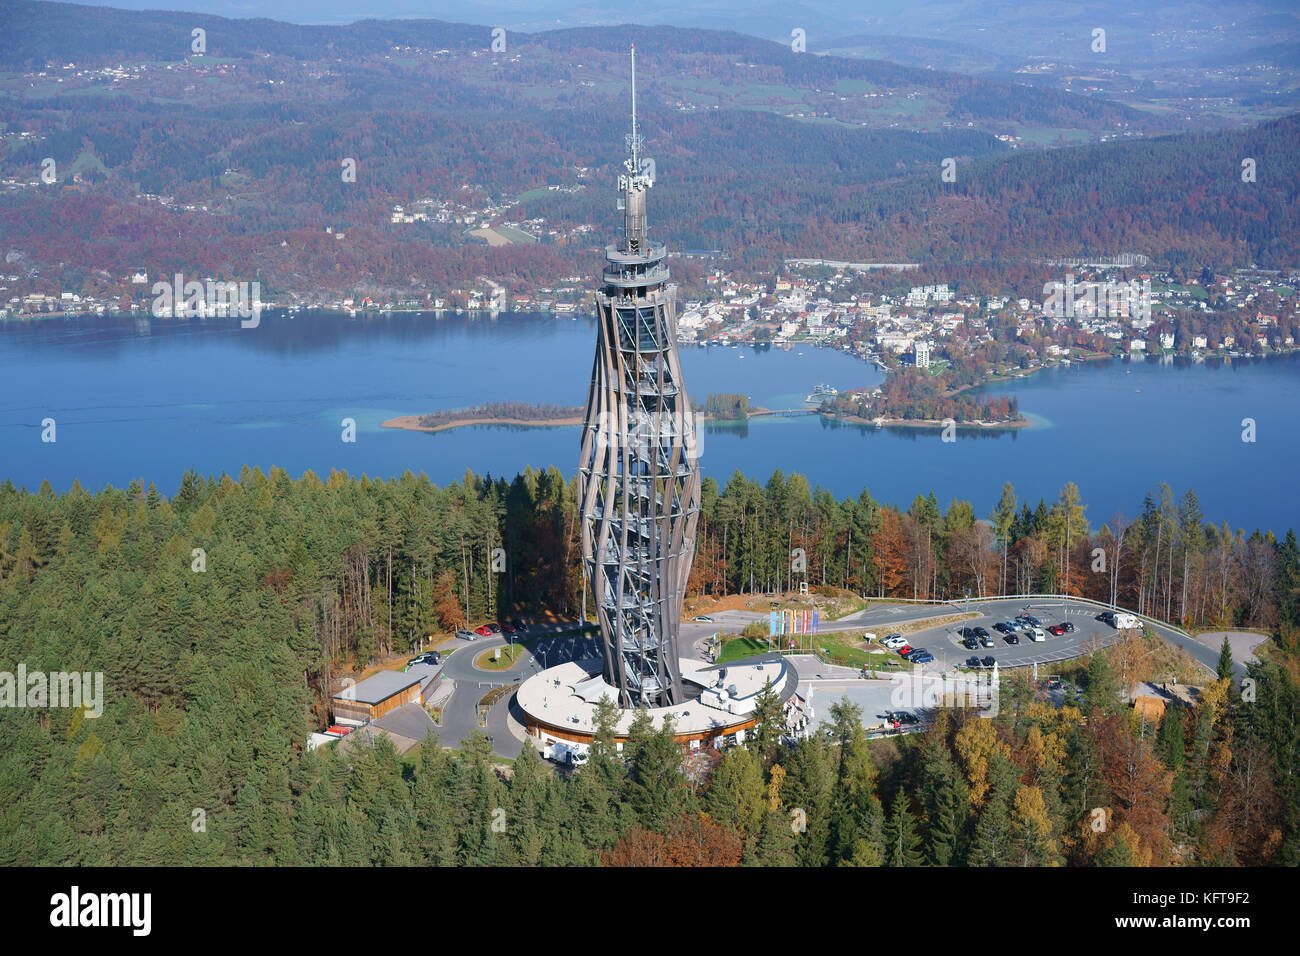 VISTA AEREA. Futuristica torre in legno utilizzata per l'osservazione e la trasmissione televisiva (altezza: 100m). Pyramidenkogel, Wörthersee, Carinzia, Austria. Foto Stock